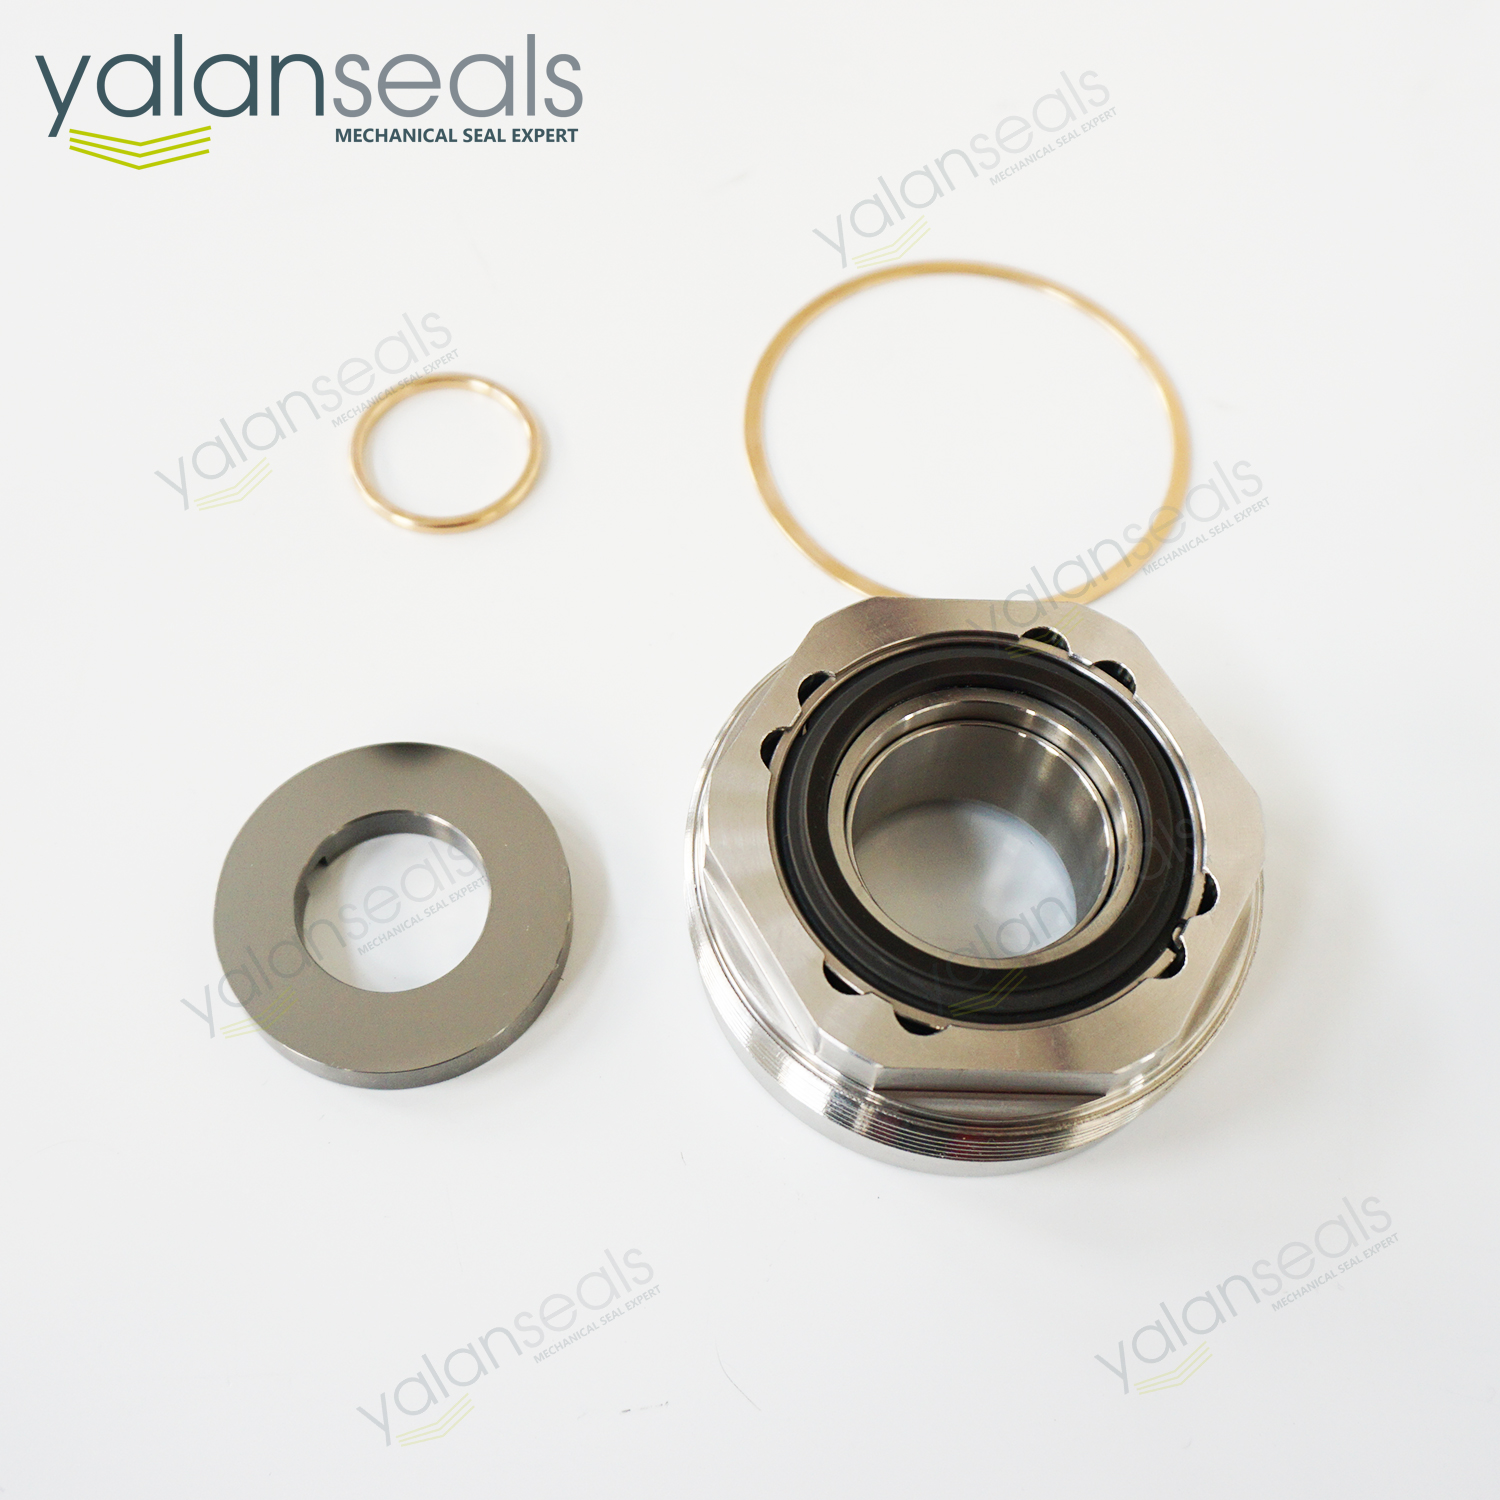 YALAN 800DP Metal Bellow Mechanical Seal for Vanzetti Cryogenic Pumps